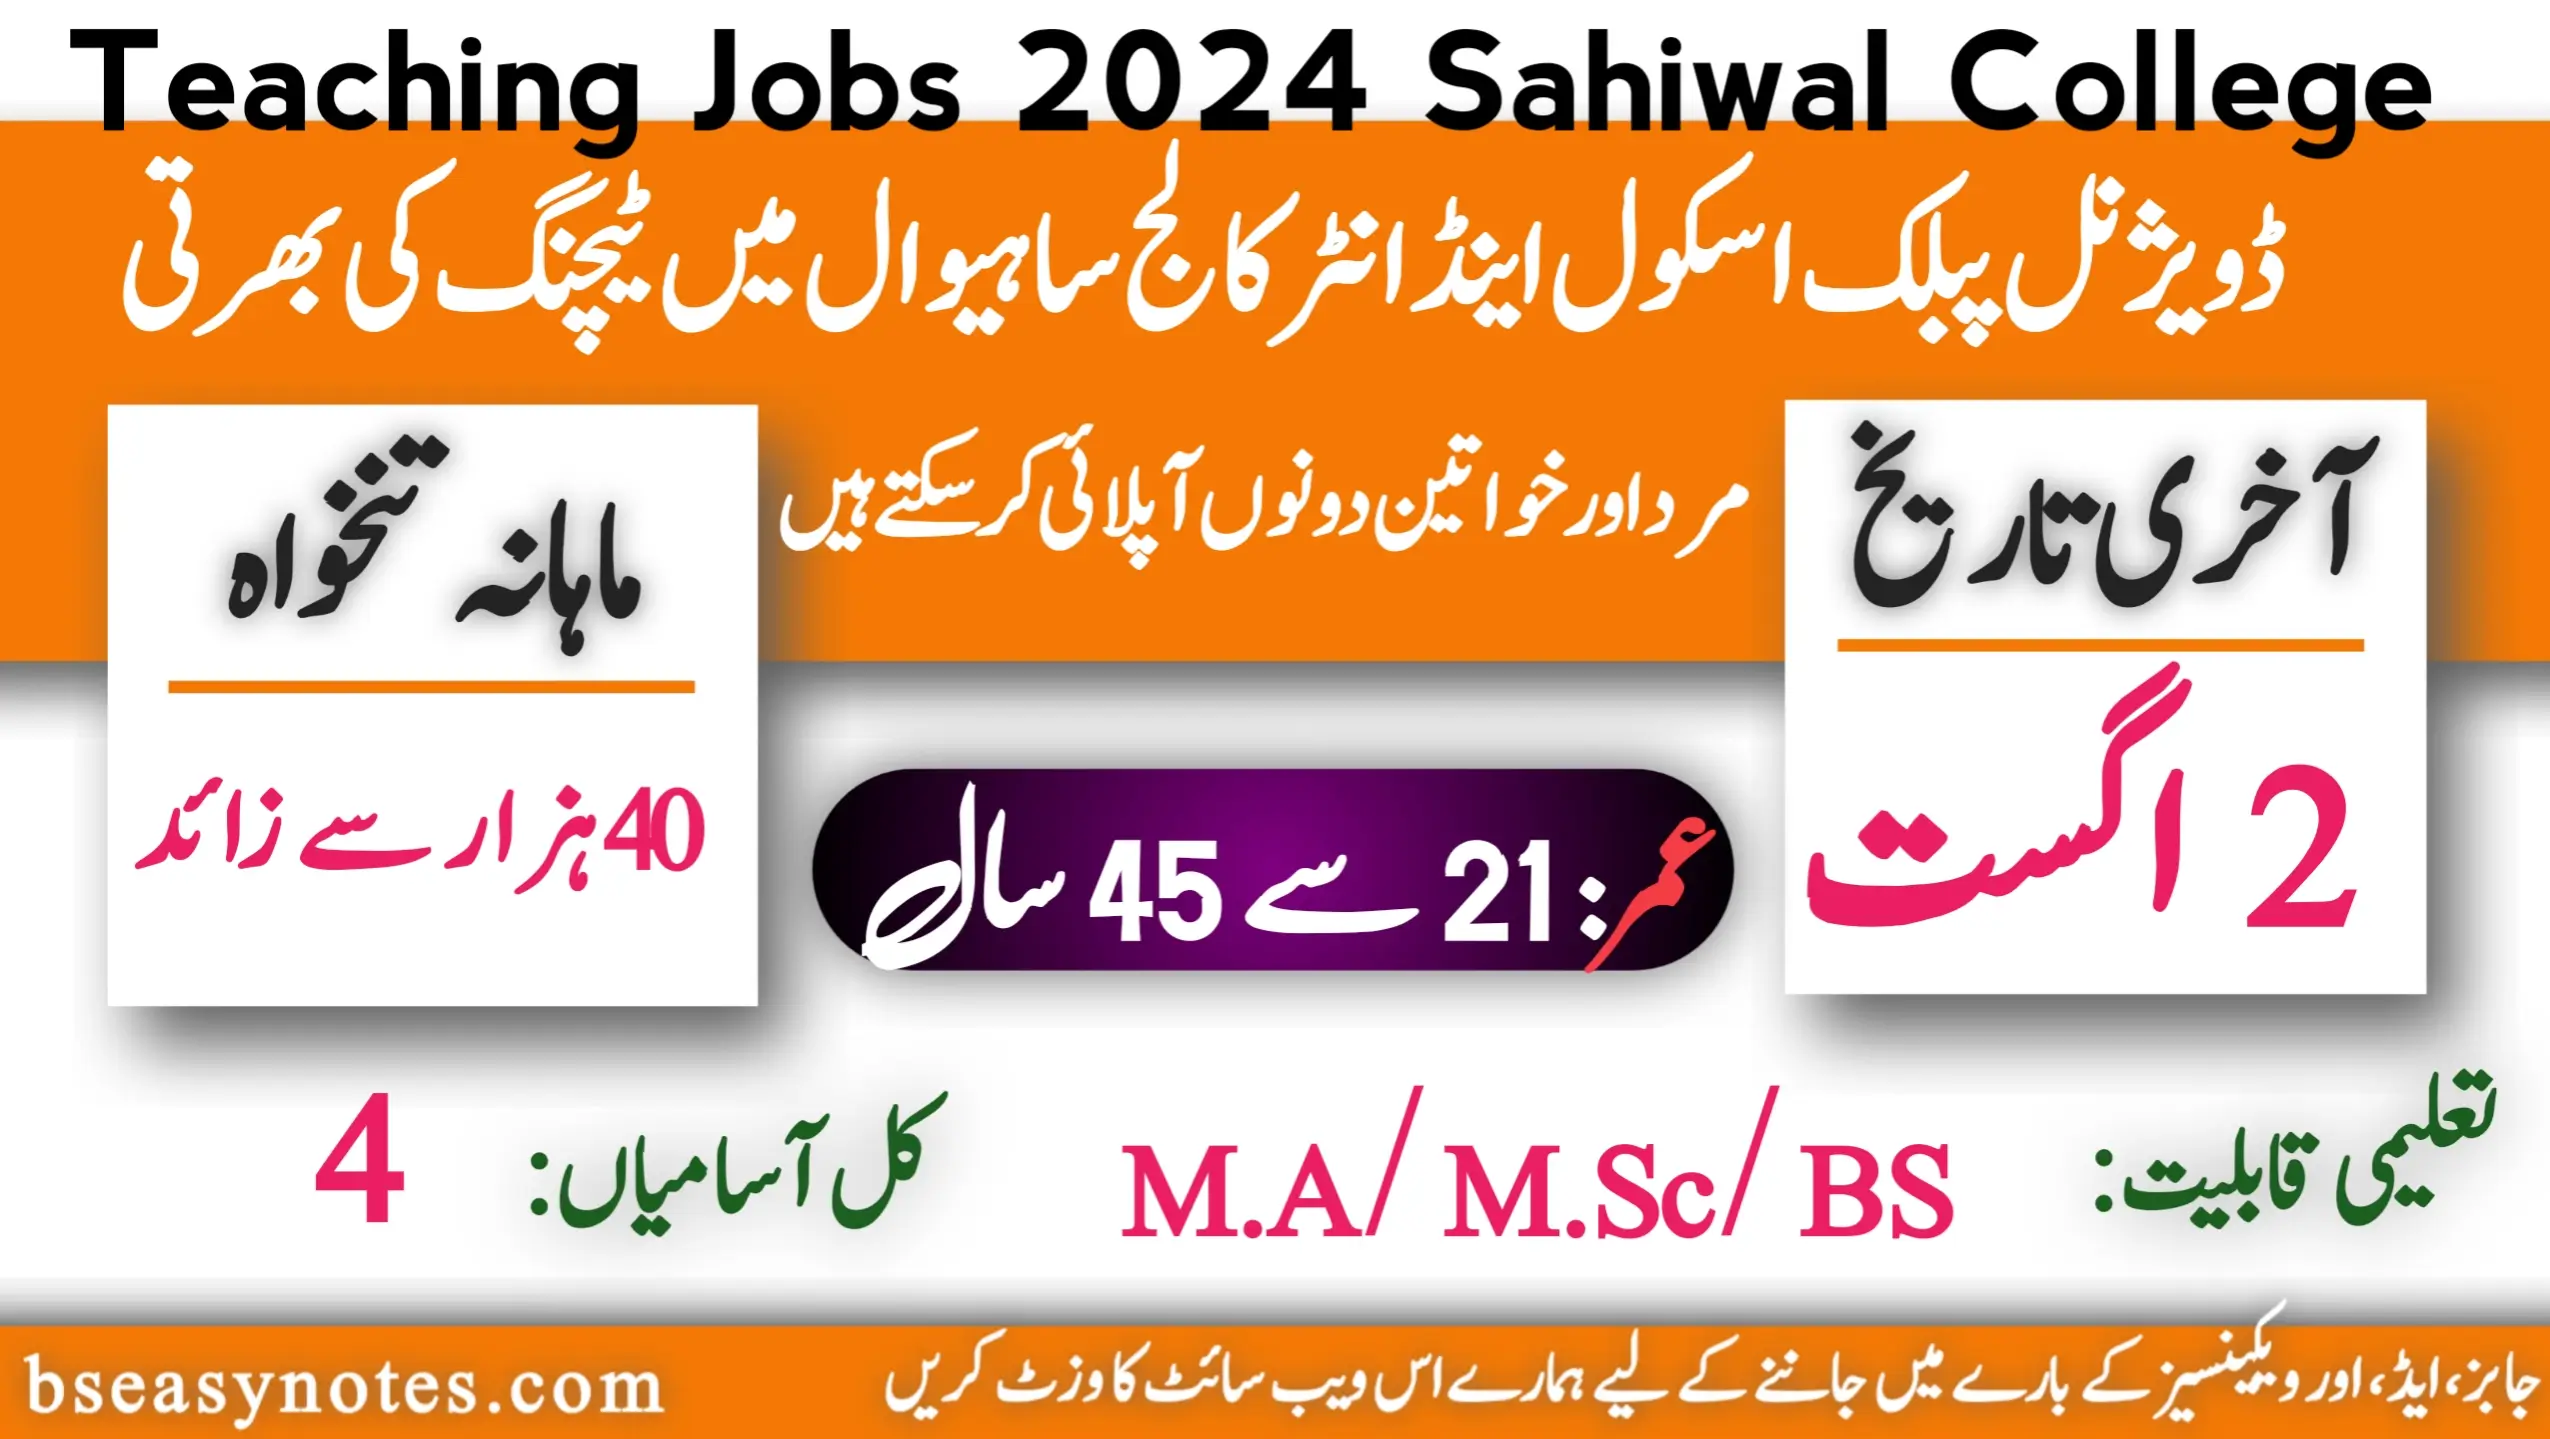 Teaching Jobs 2024 Sahiwal College